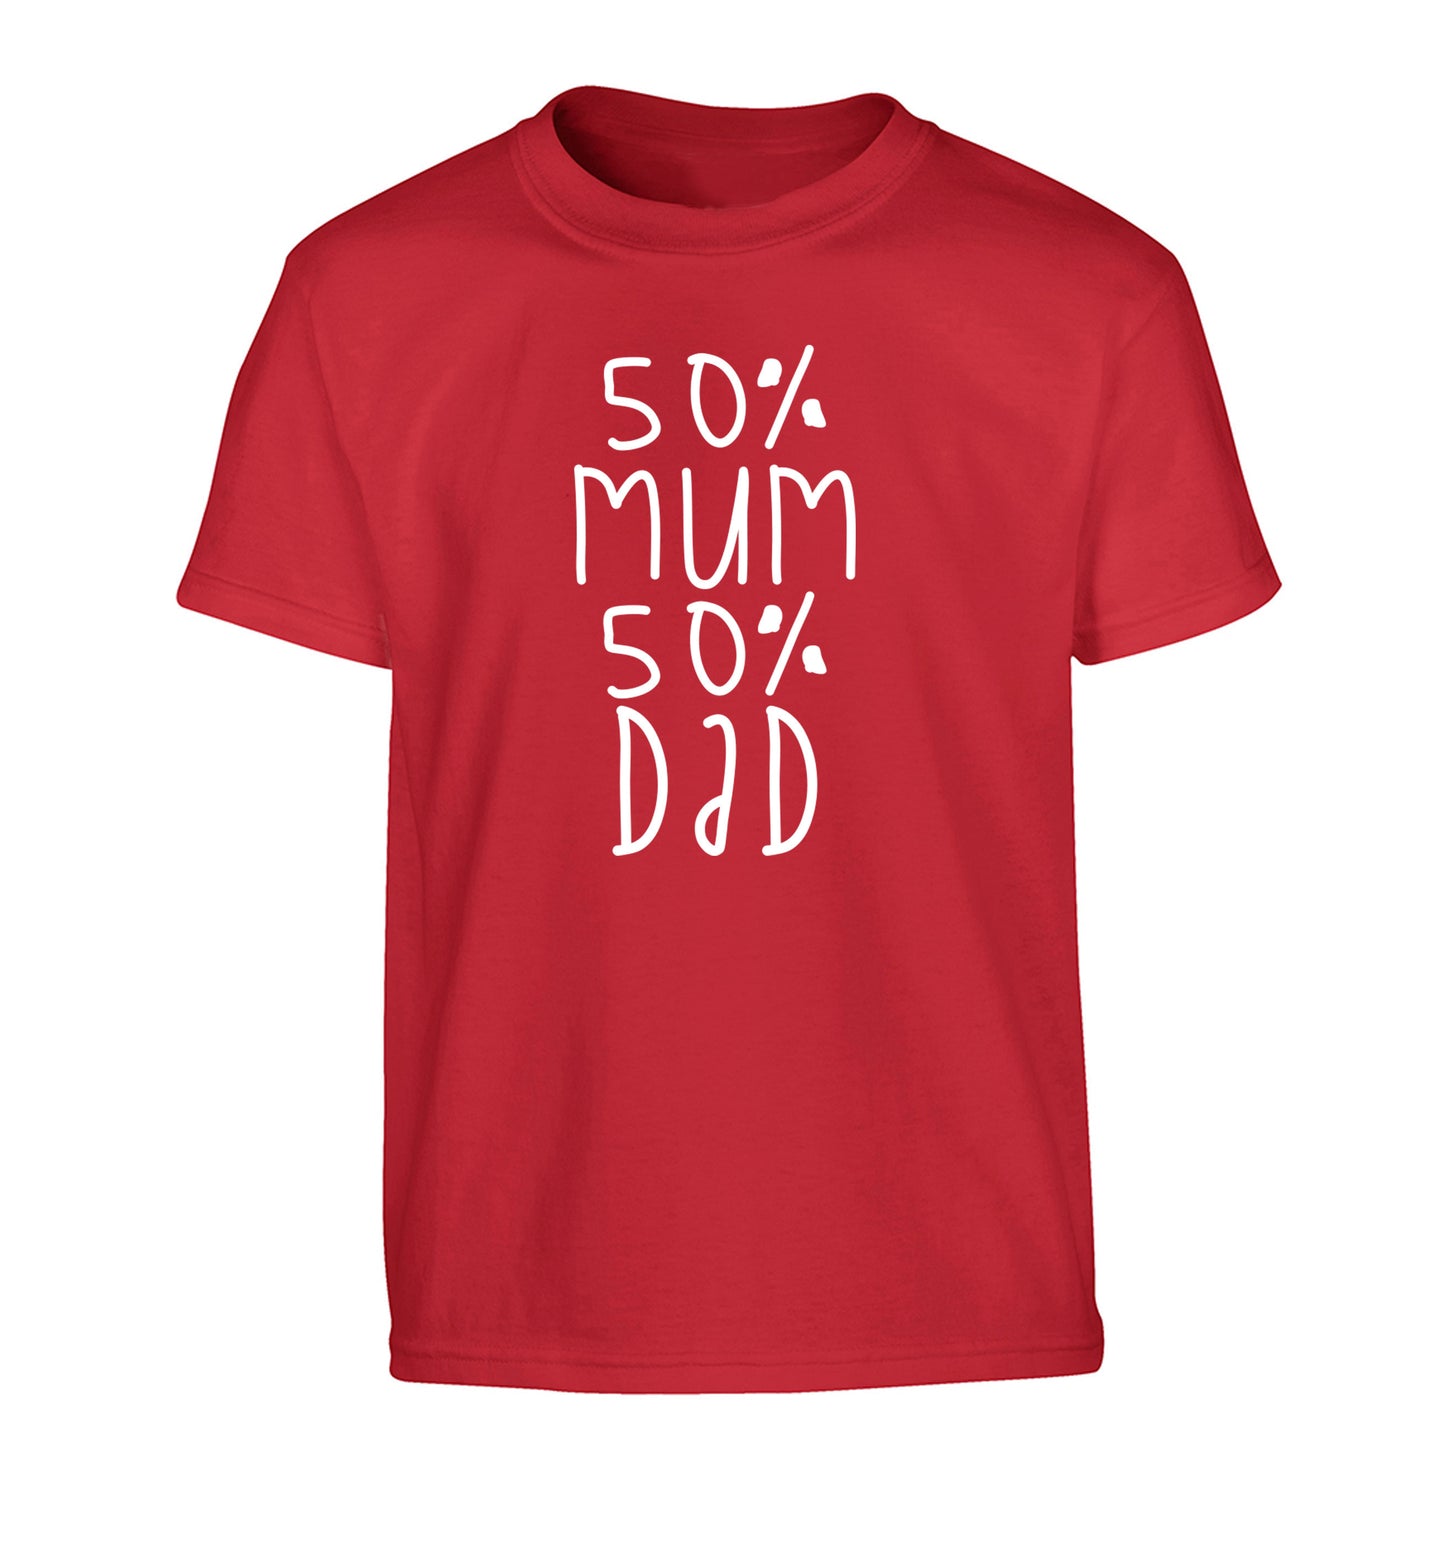 50% mum 50% dad Children's red Tshirt 12-14 Years